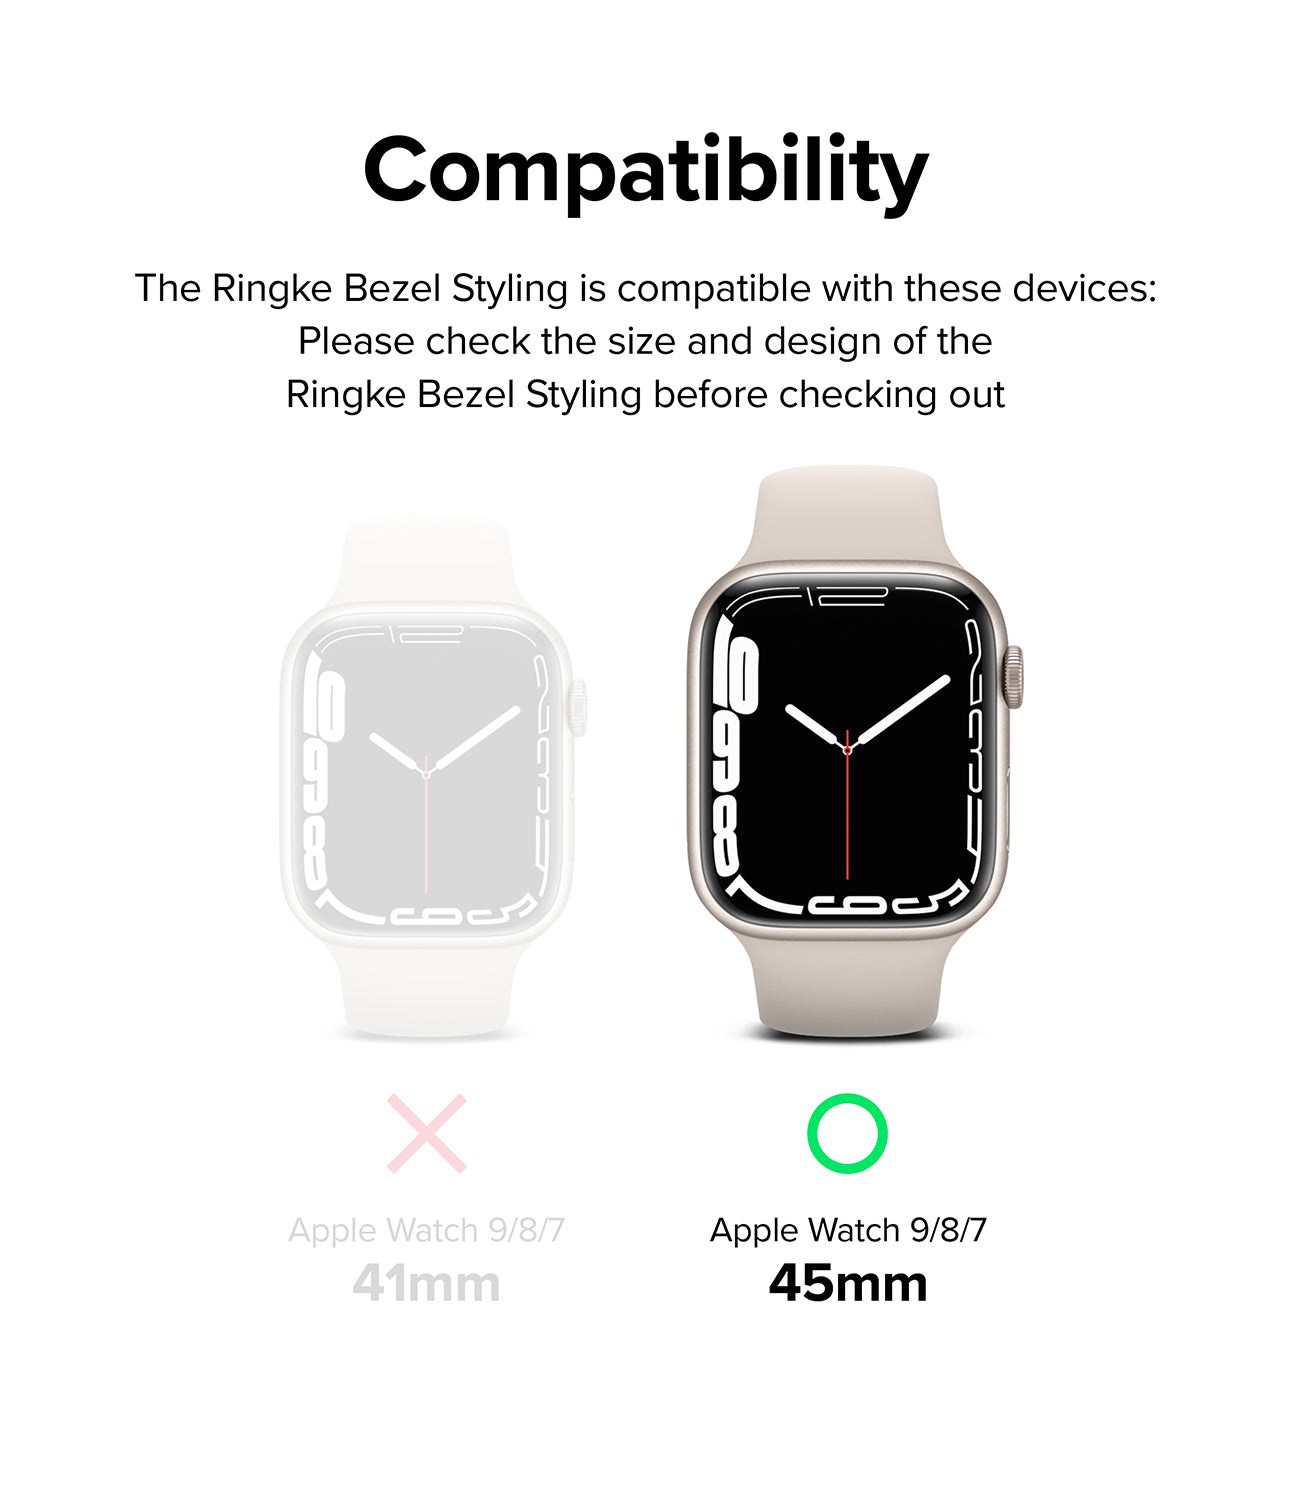 Apple Watch Series 9/8/7 (45mm) | Ringke Bezel Styling | 45-03 Black-Compatibility